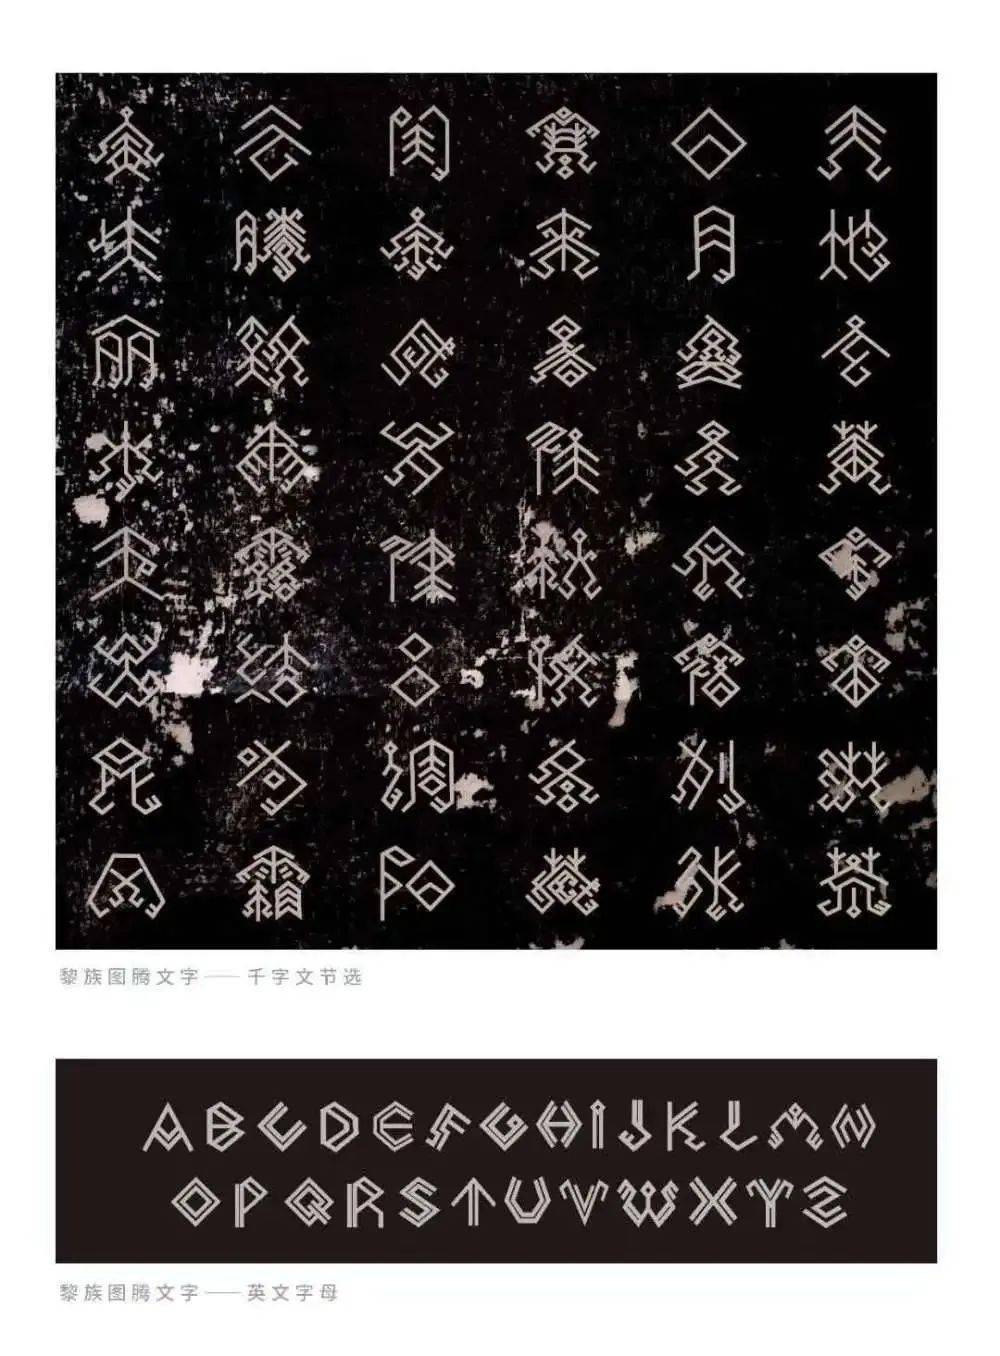 黎族图腾文字是如何创作的海南黎族图腾文字创新创作的成员 王芳:自